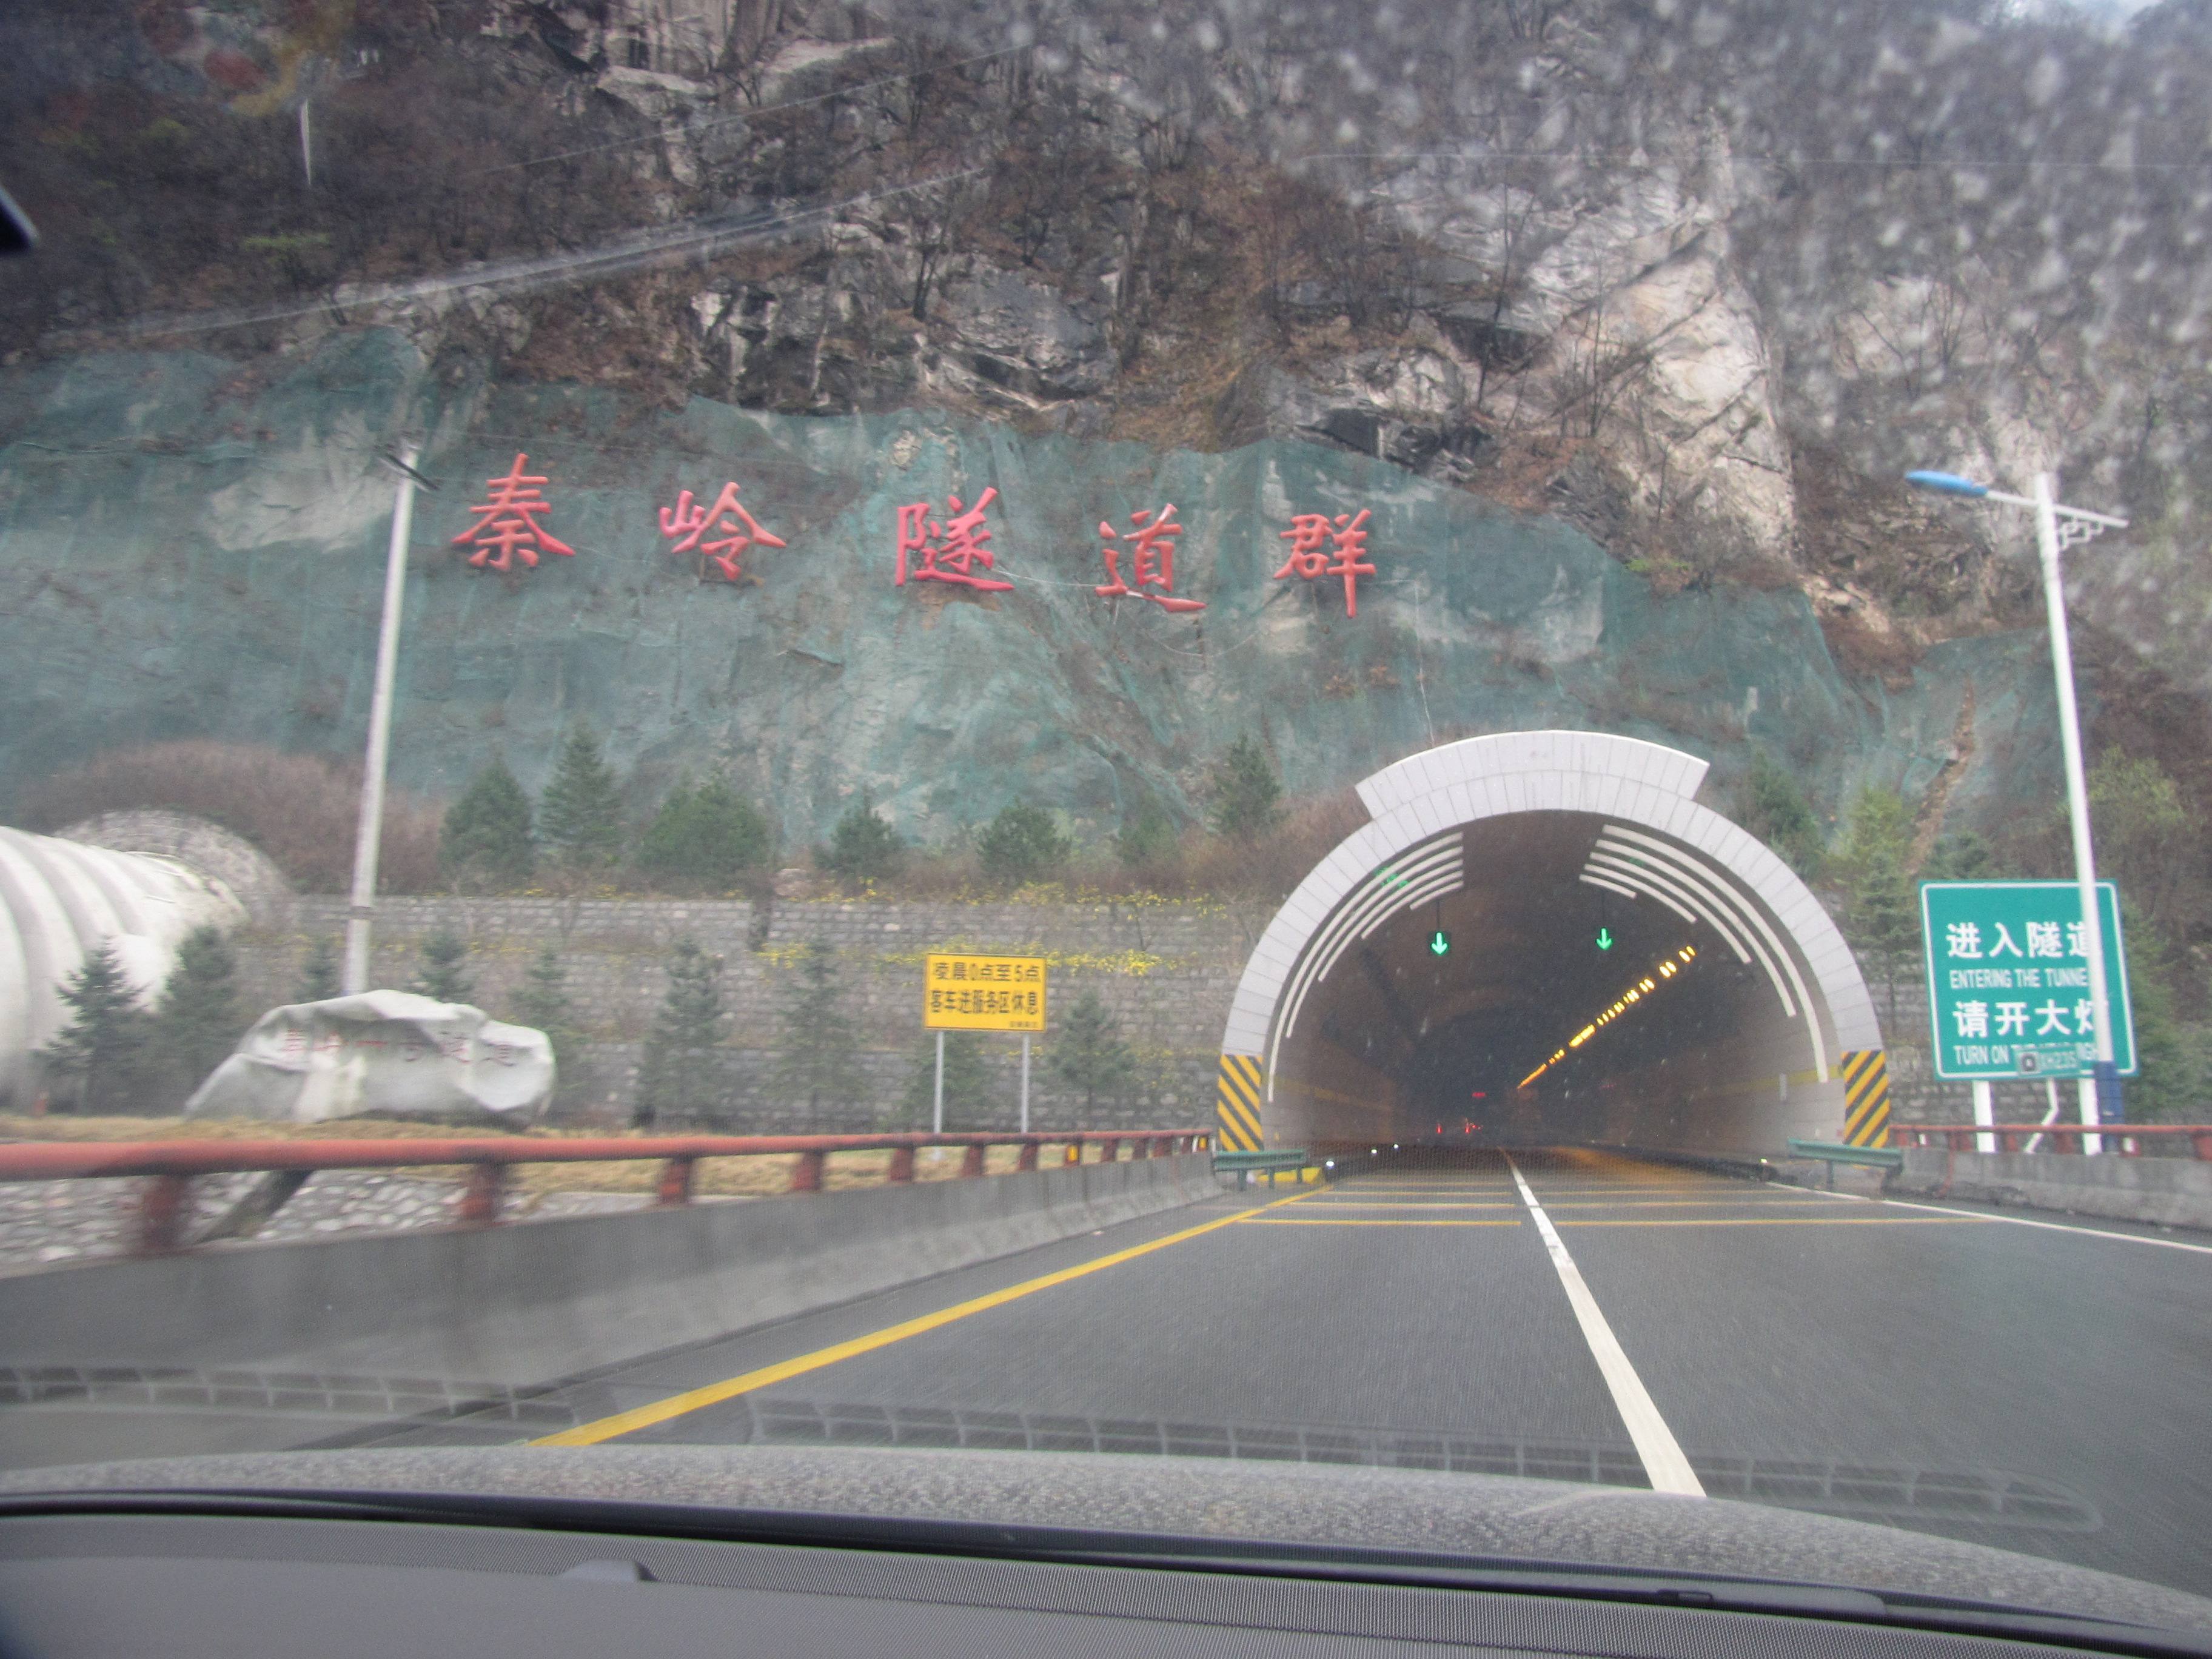 中国造出世界最长隧道:全长98公里,2020年全线贯通!